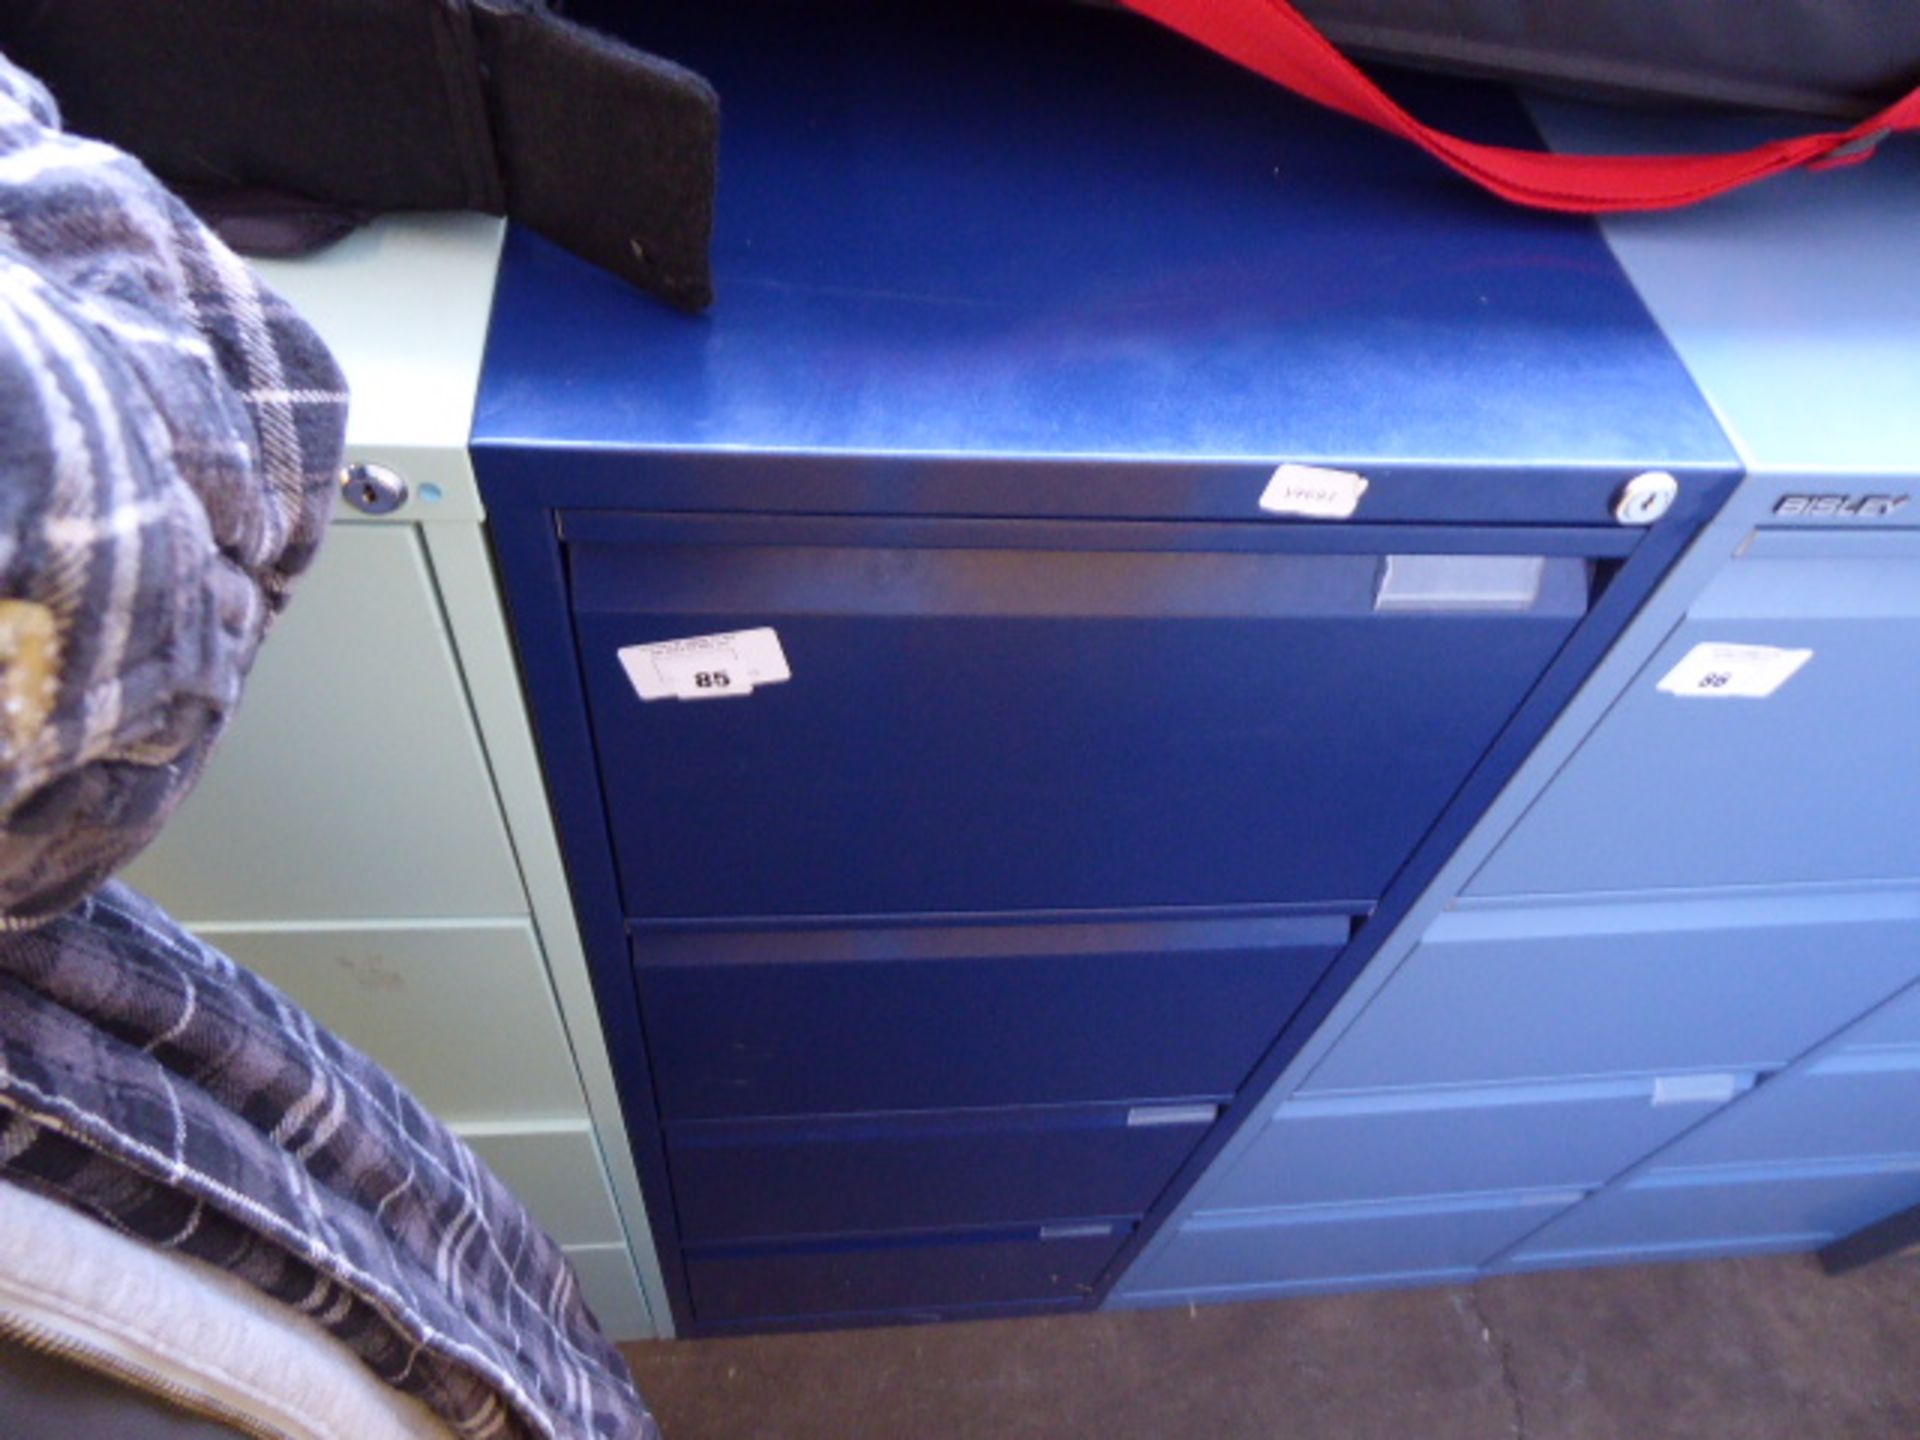 Blue metal 4 drawer filing cabinet